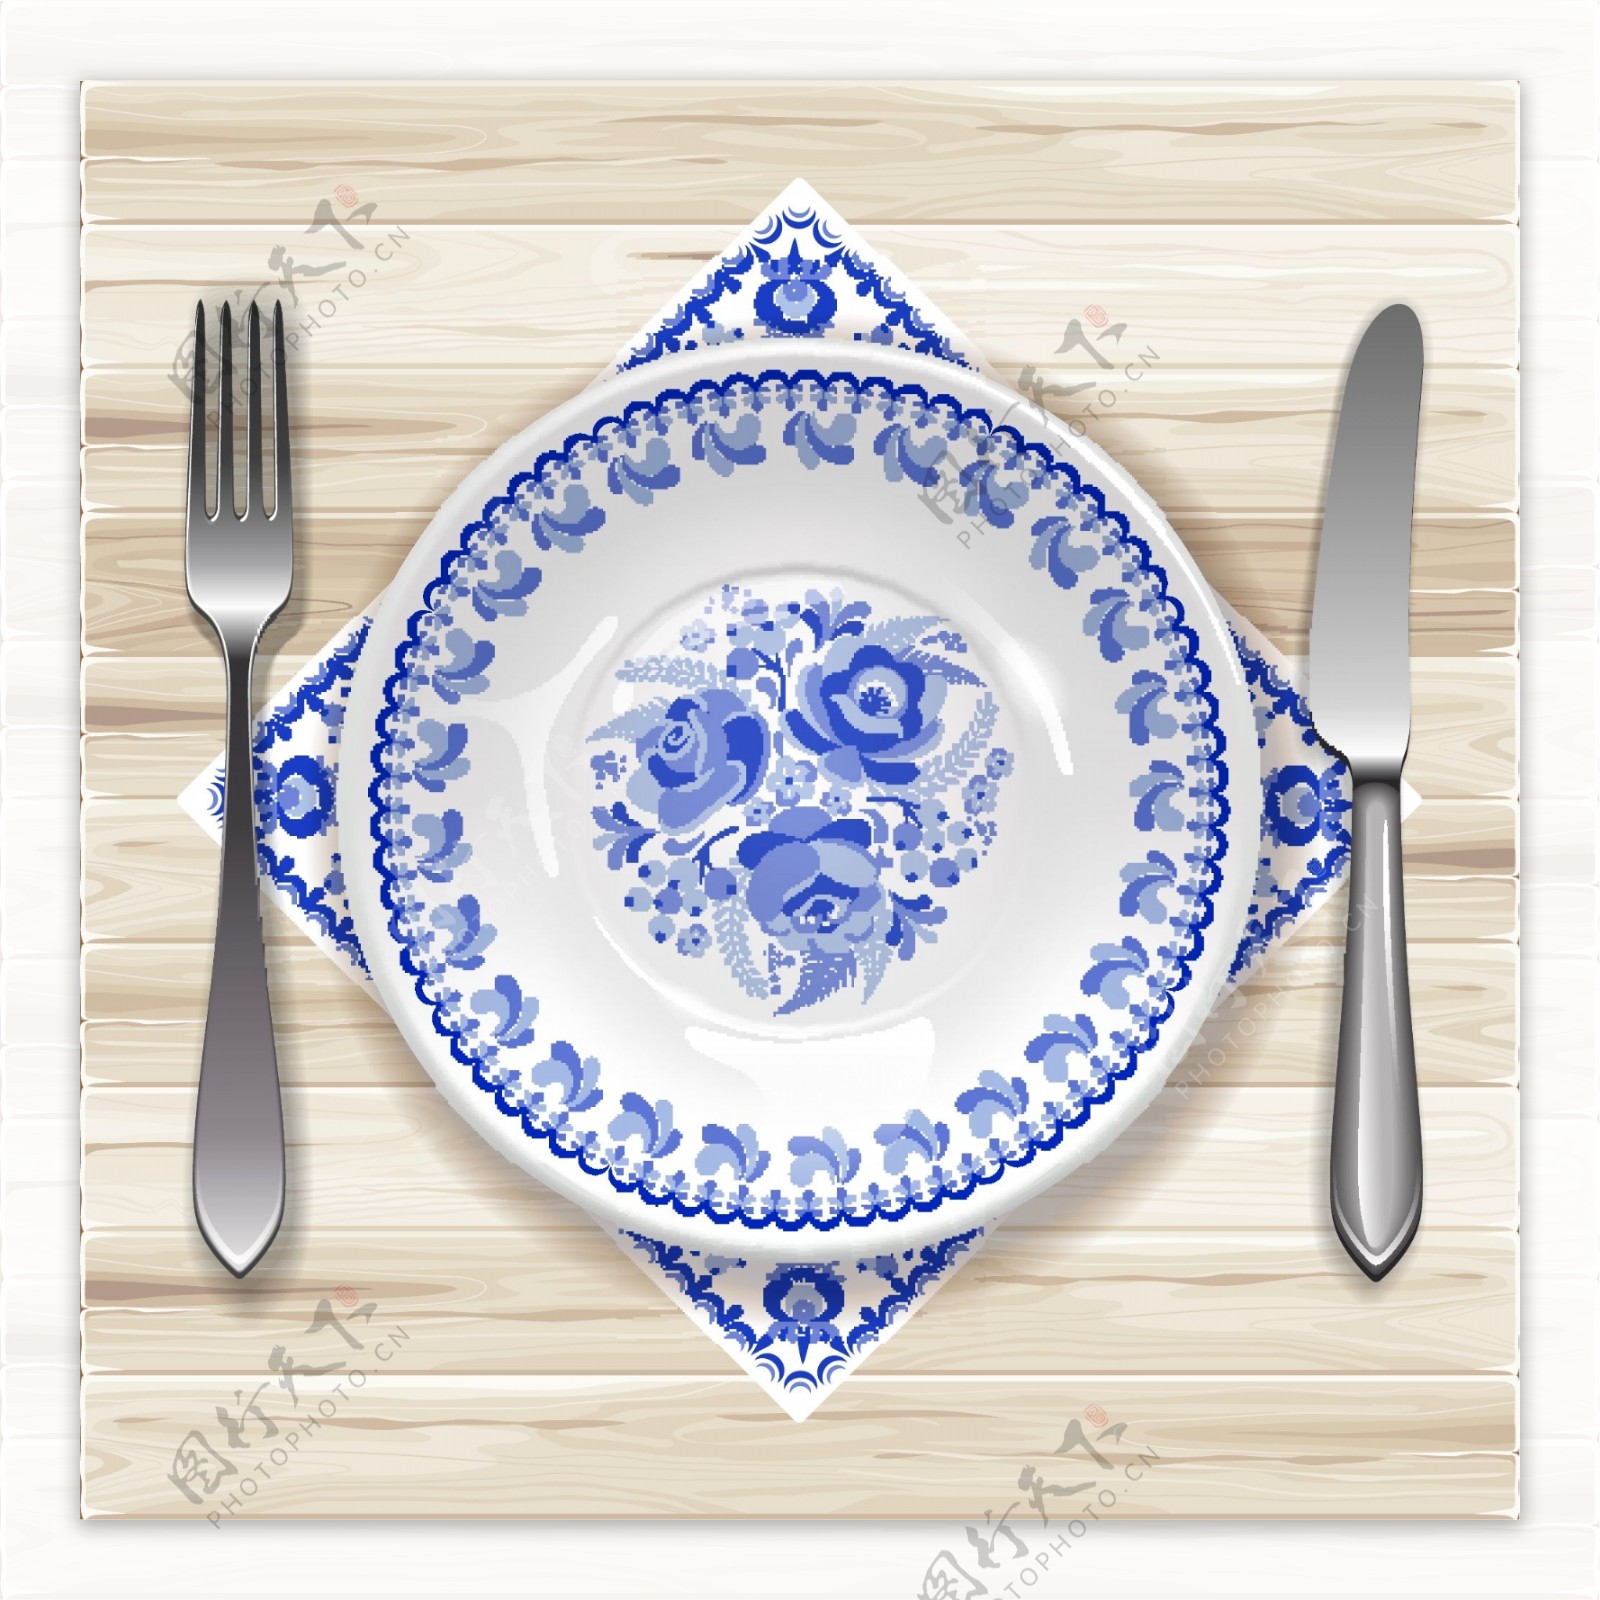 西餐餐具蓝色花纹青花纹餐具餐盘